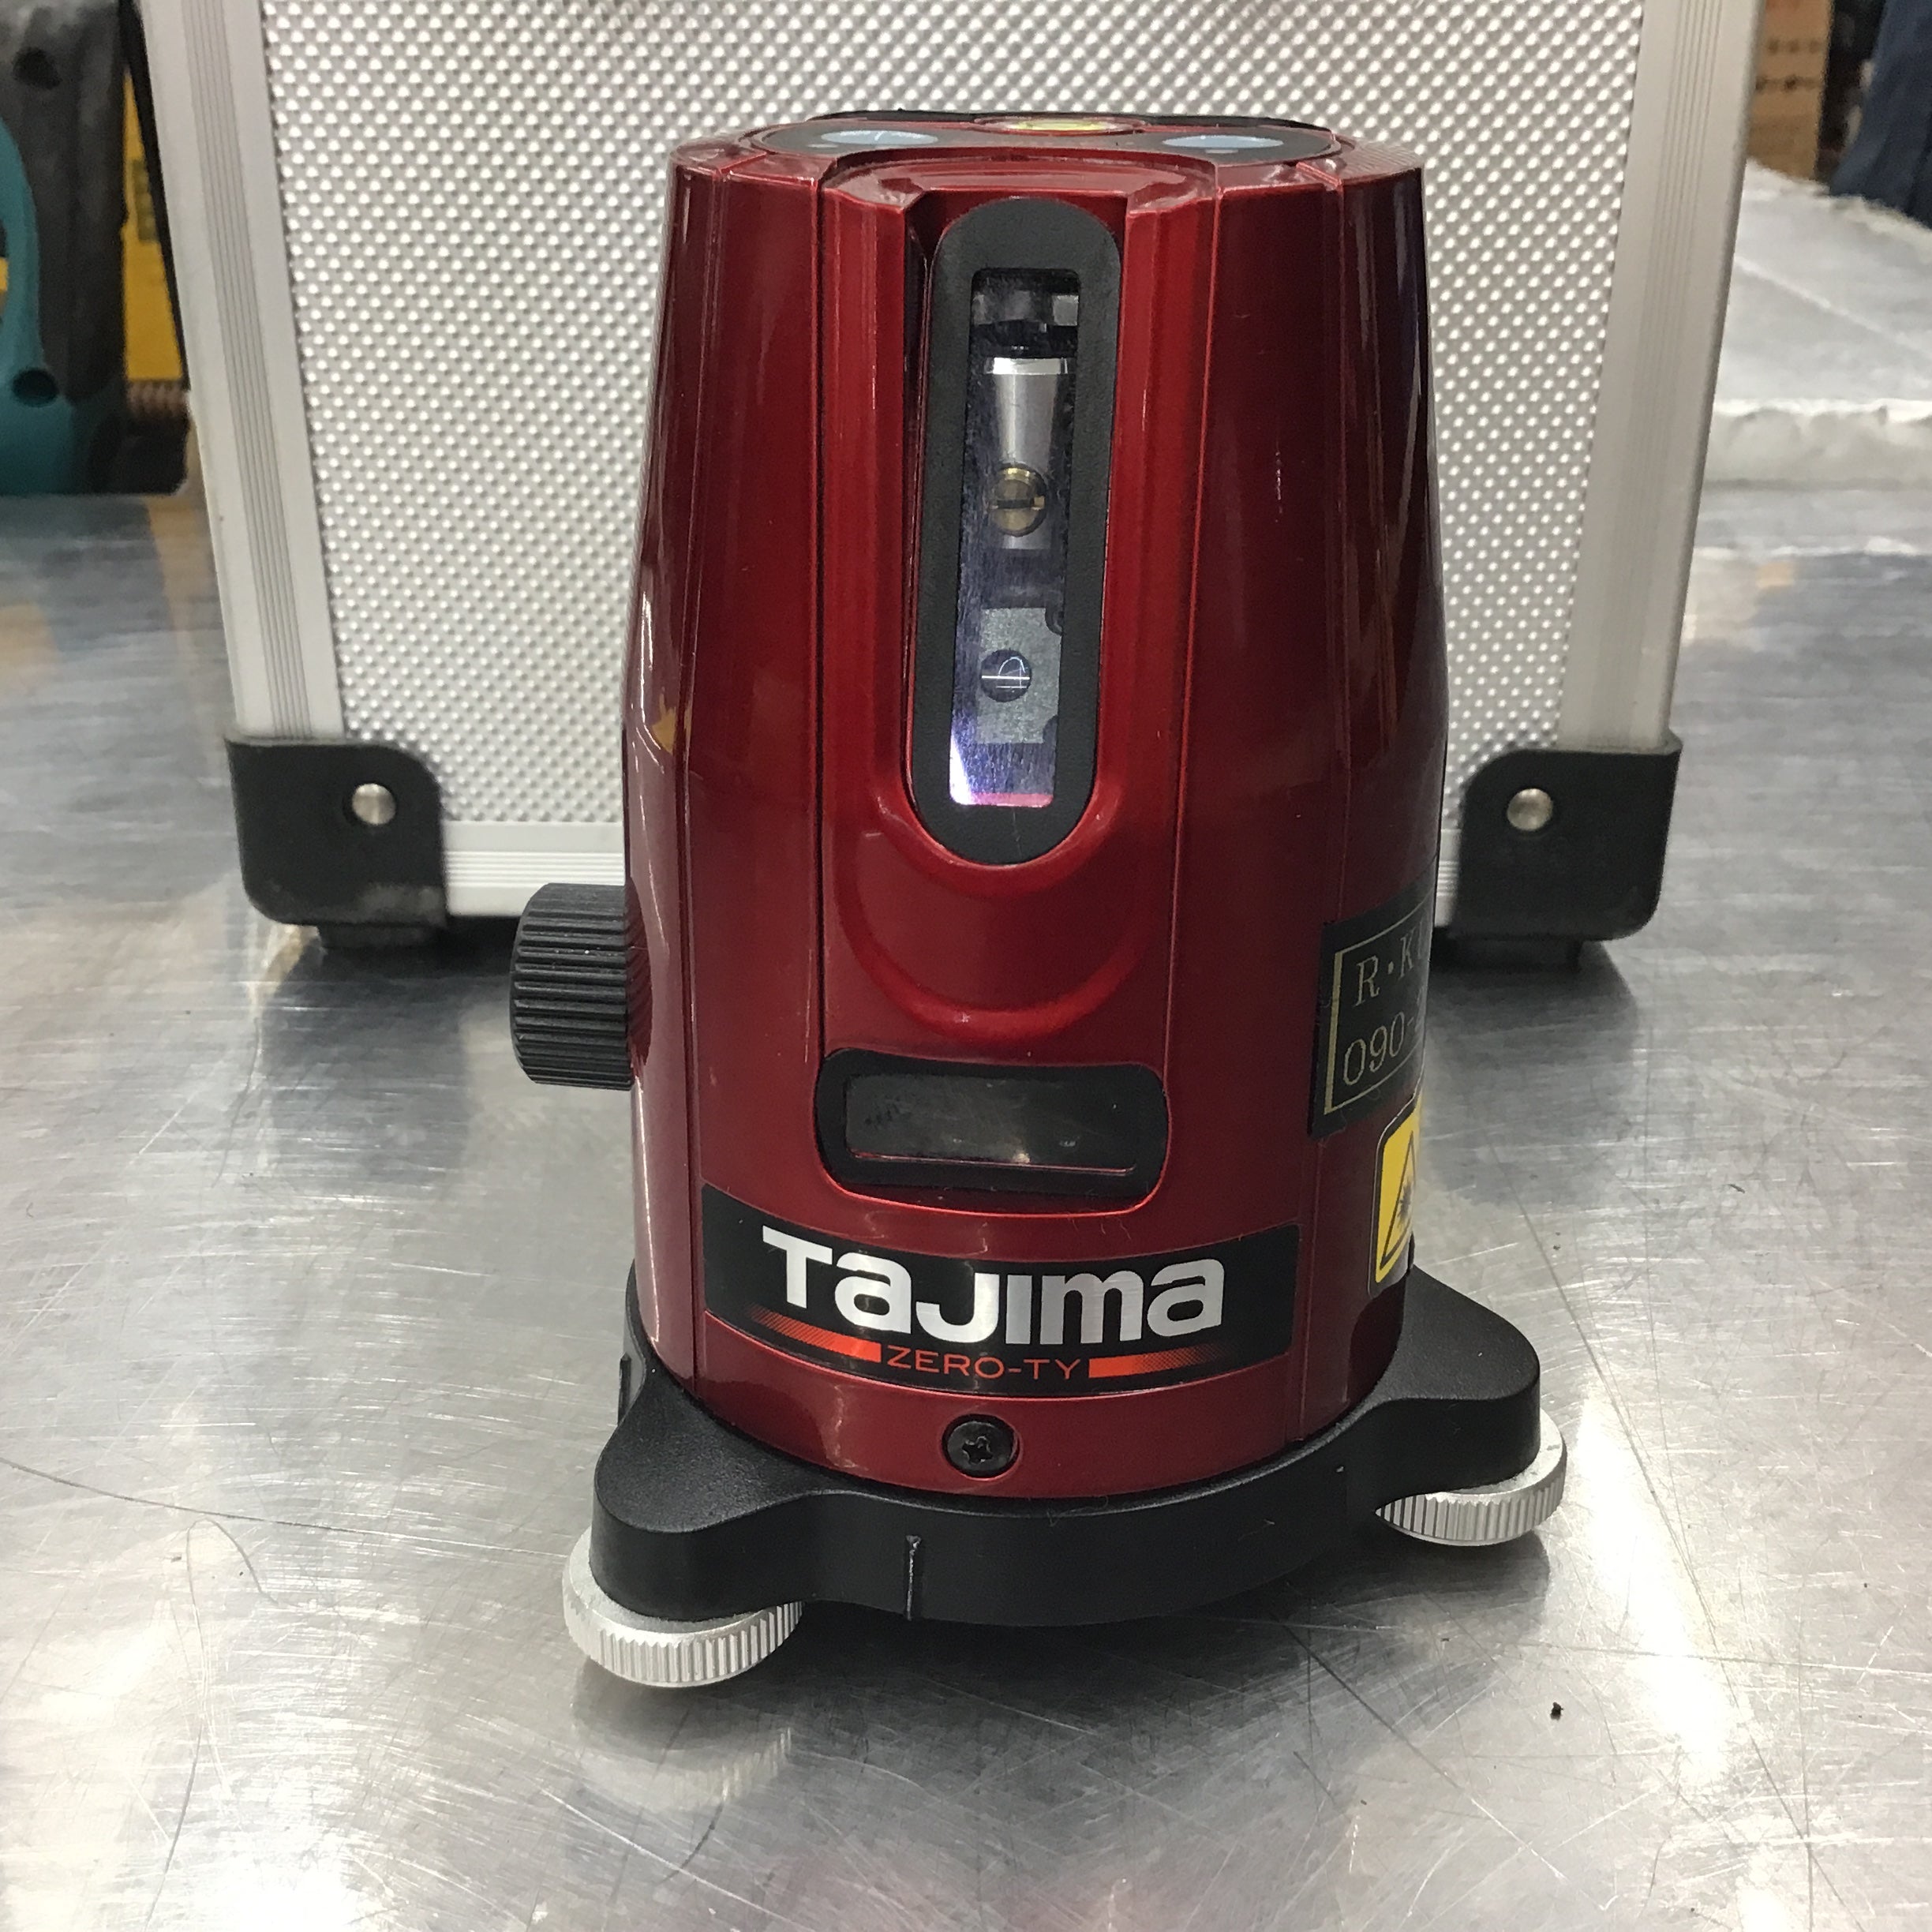 TAJIMA GT4 Ti タジマレーザー墨出し器 受光器付きです - 工具 